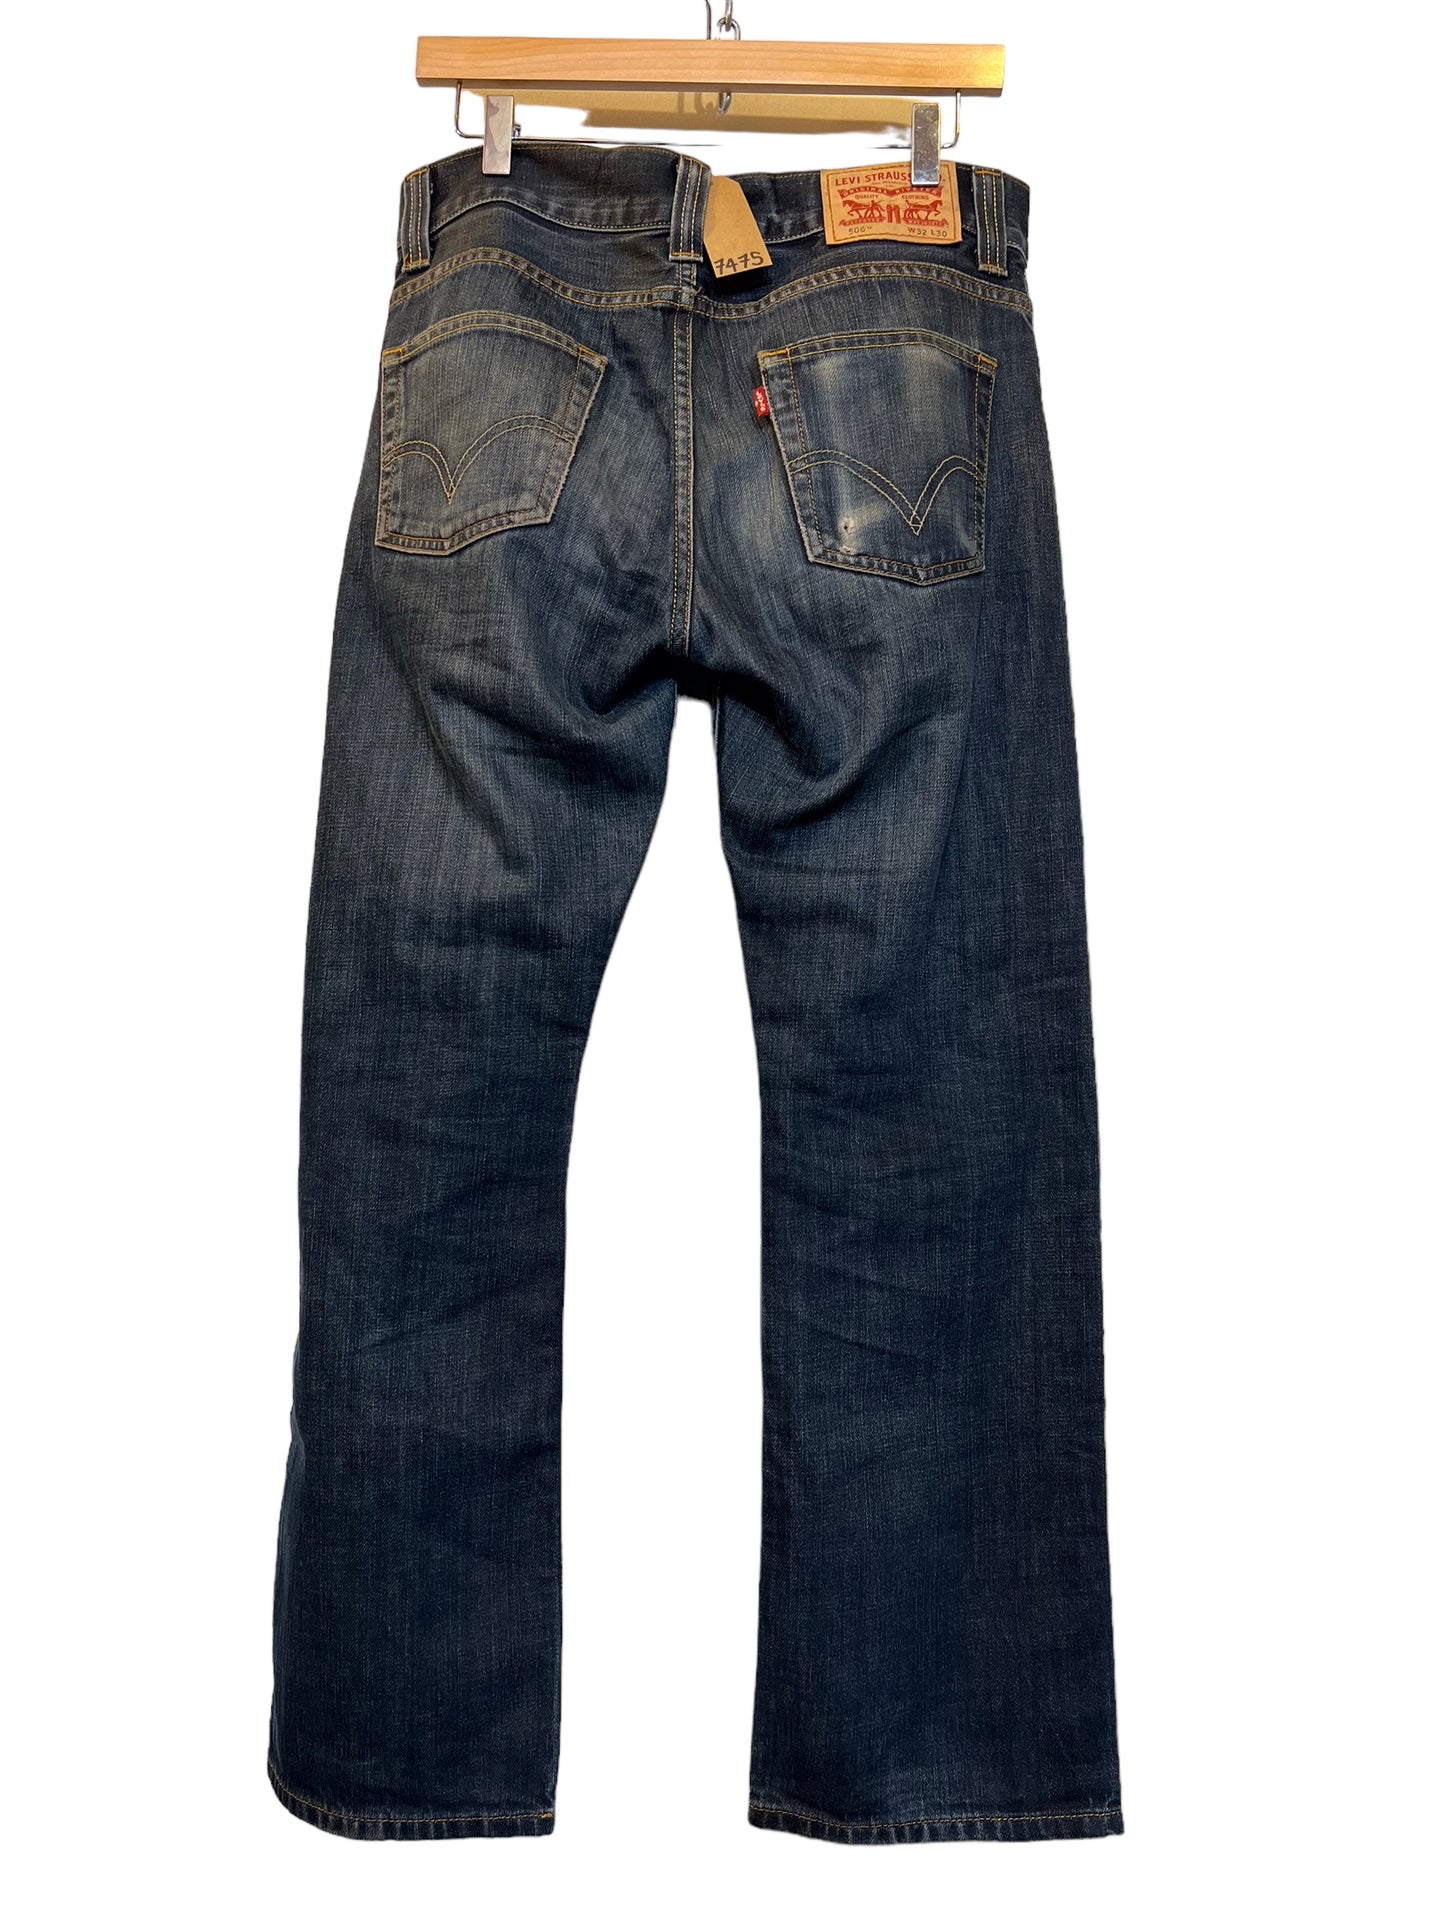 Levi 506 jeans (32x30)